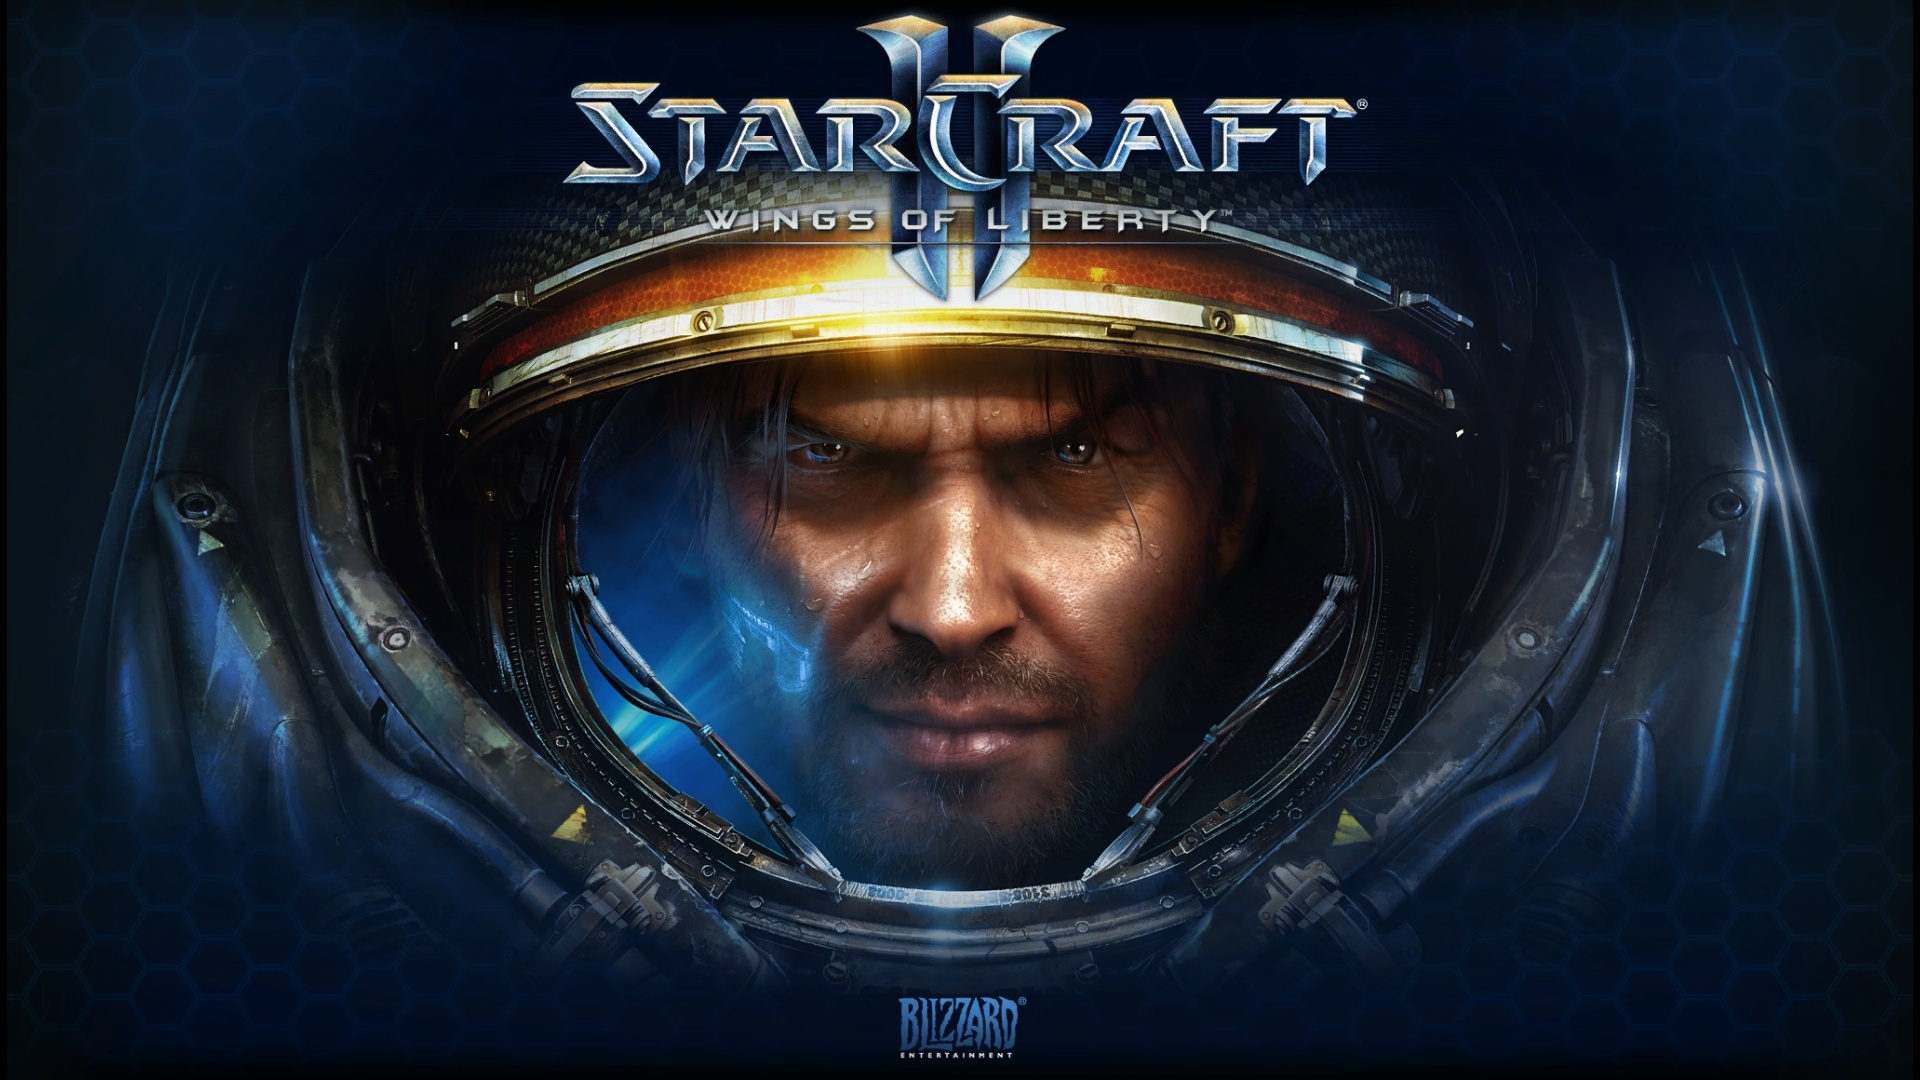 HD Starcraft 2 Games War Wallpaper 1080p Full Size ...